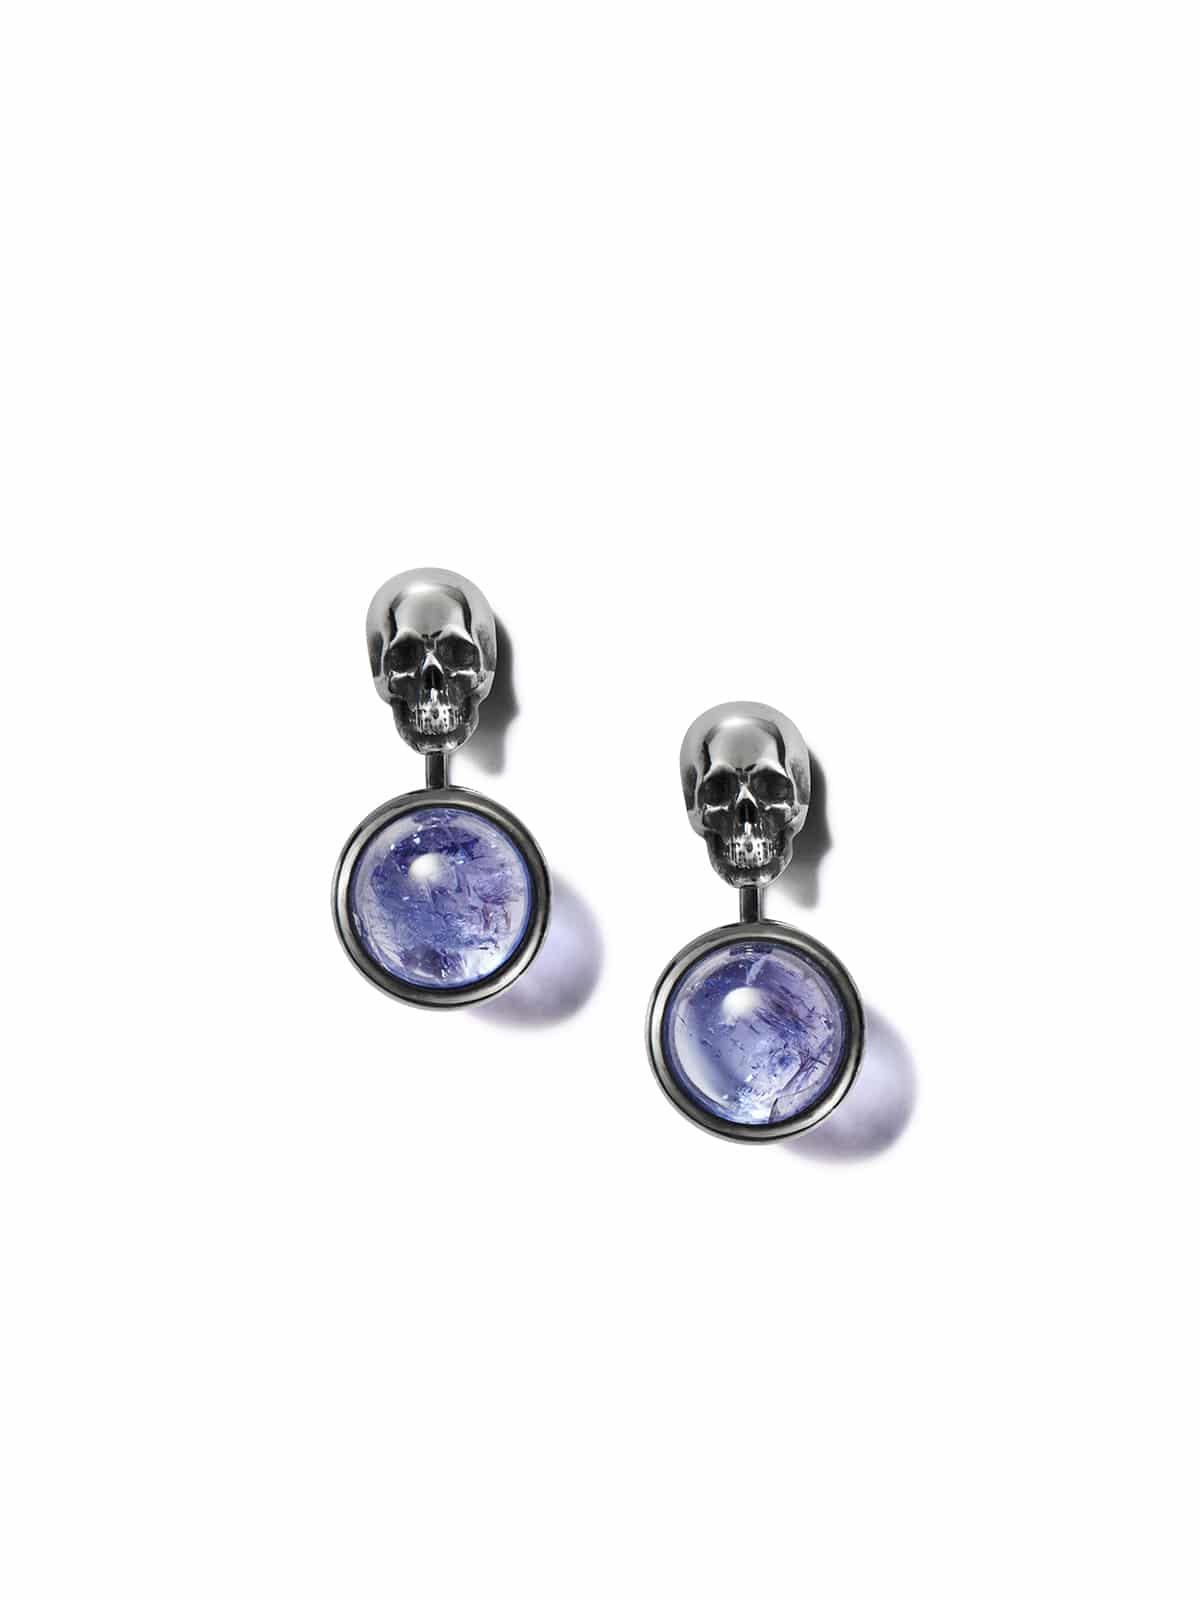 Small space inside earrings